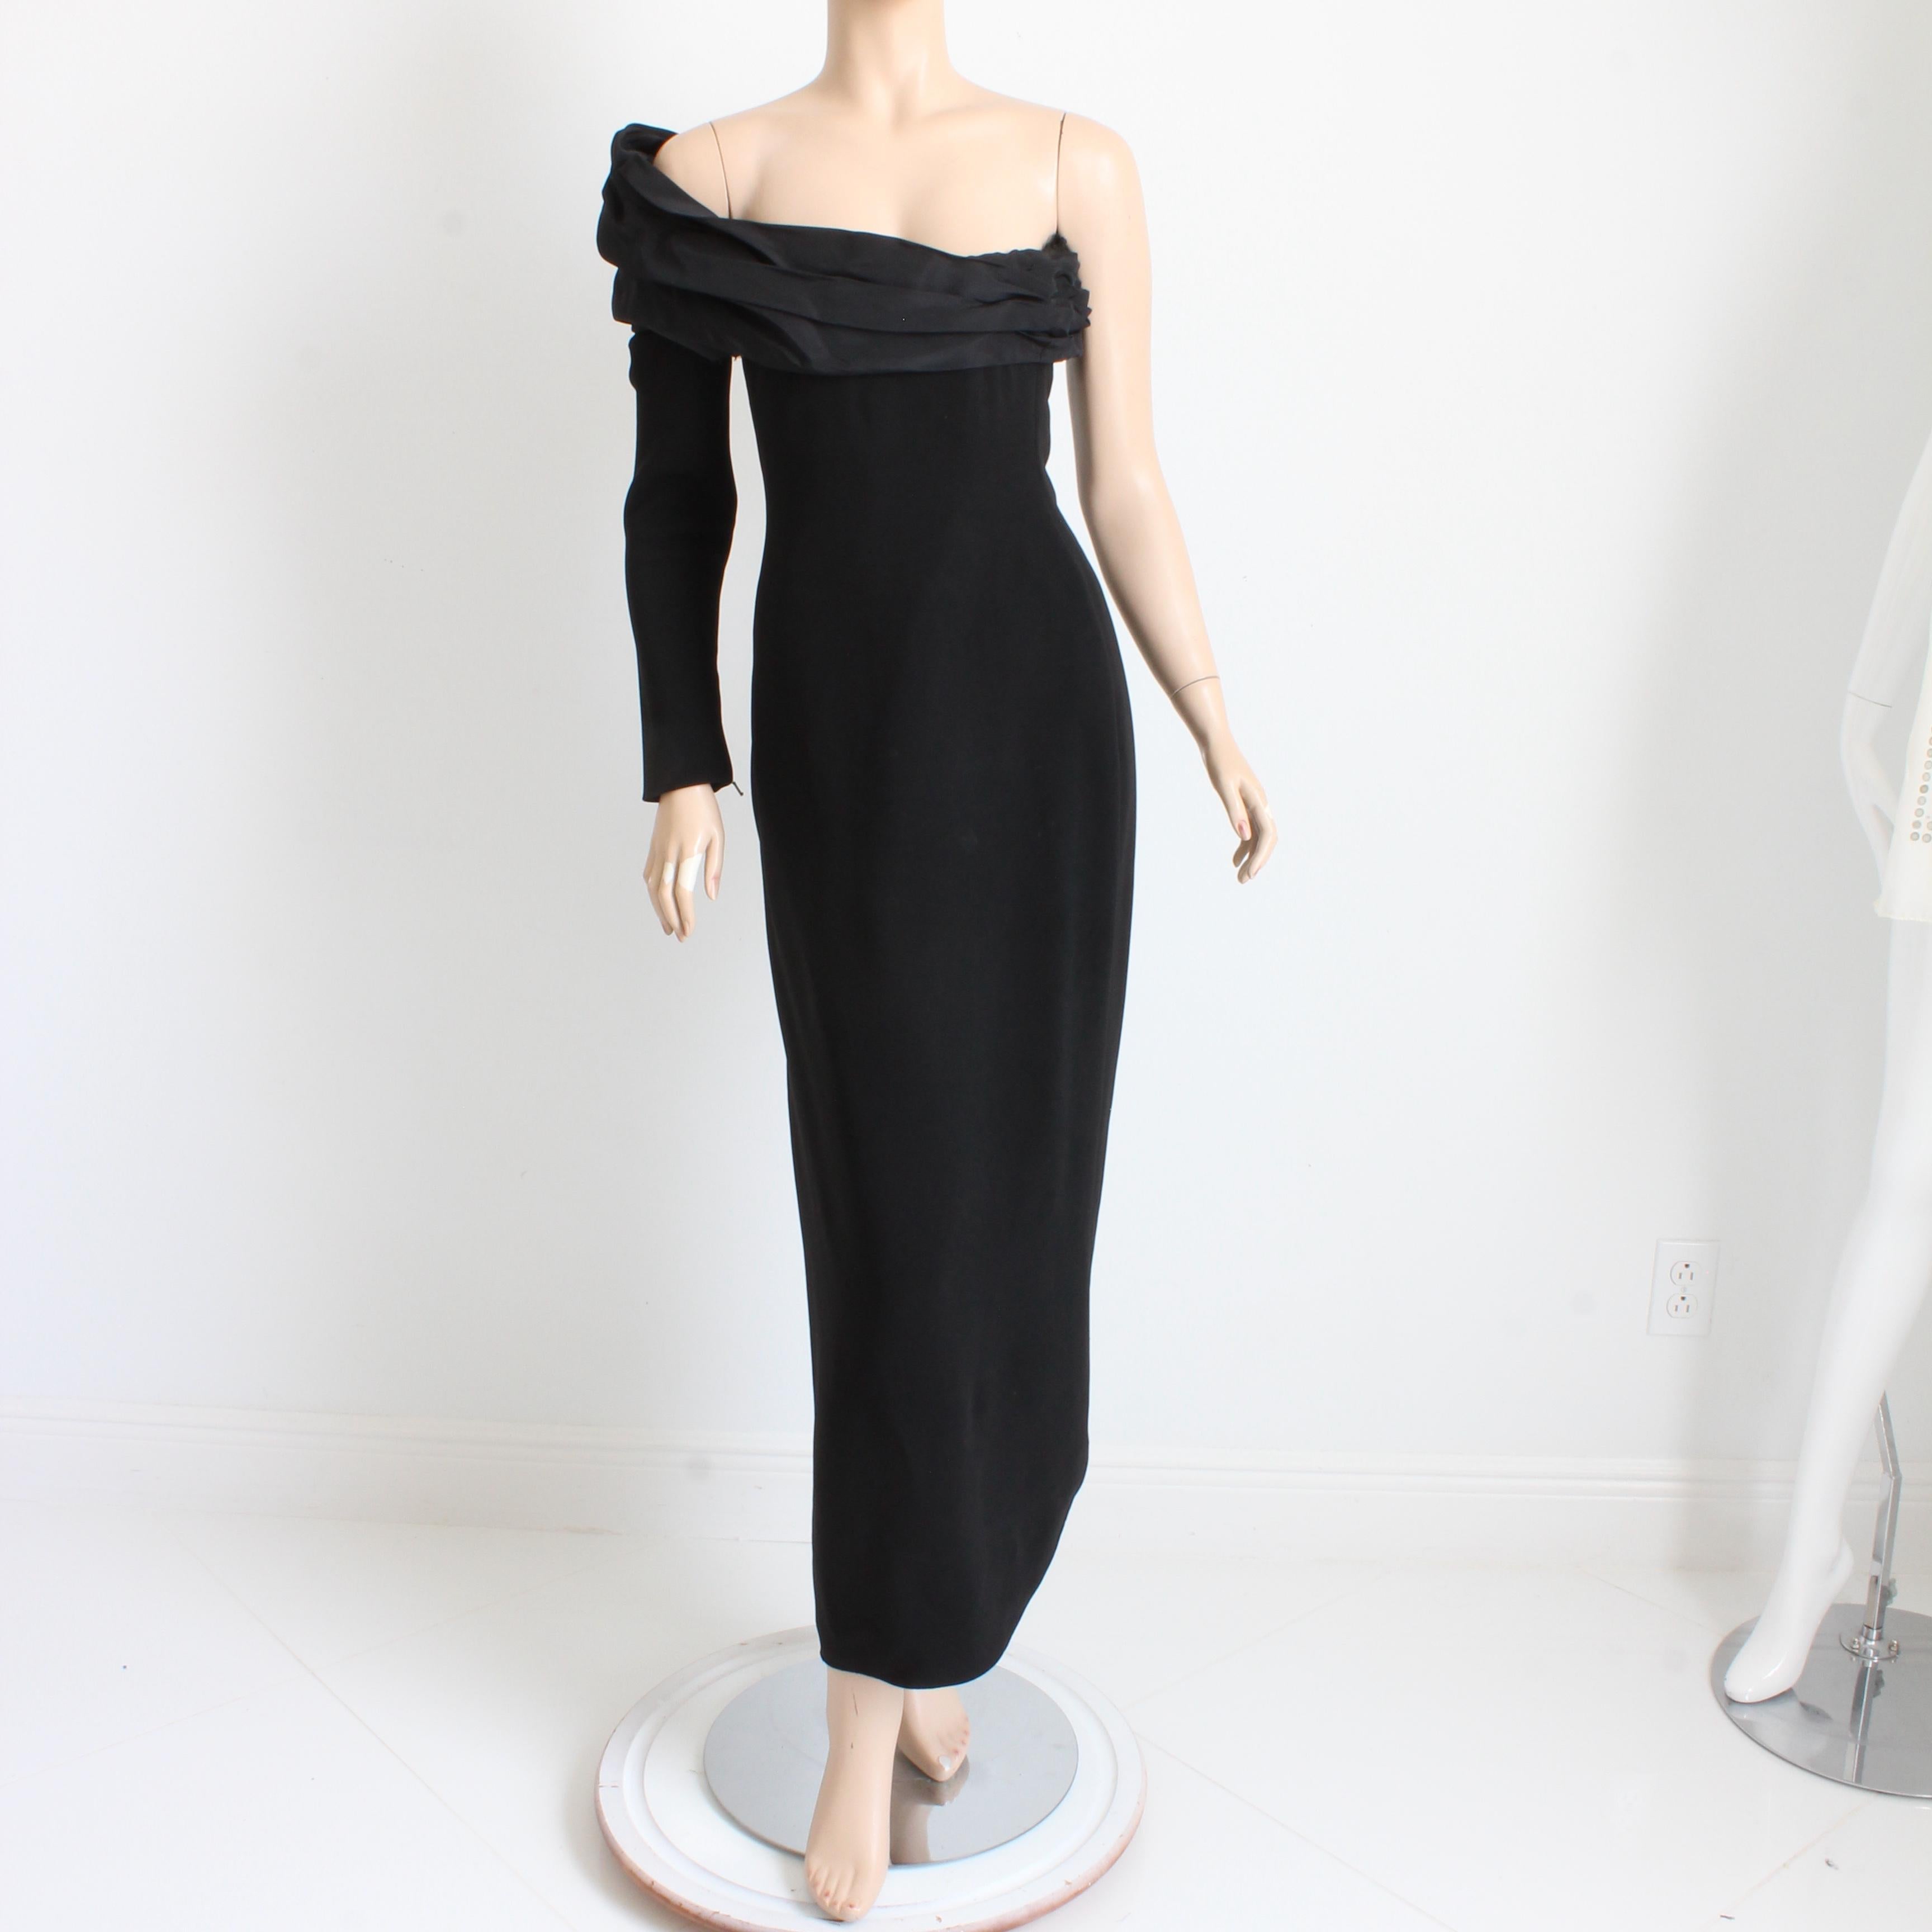 Dieses fabelhafte Haute-Couture-Abendkleid stammt von Christian Lacroix, wahrscheinlich aus den frühen 1980er Jahren. Dieses Kleidungsstück aus feinem Seidenkrepp (kein Inhaltsetikett) wird mit einer Reihe von Häkchen und Druckknöpfen am Korsett des